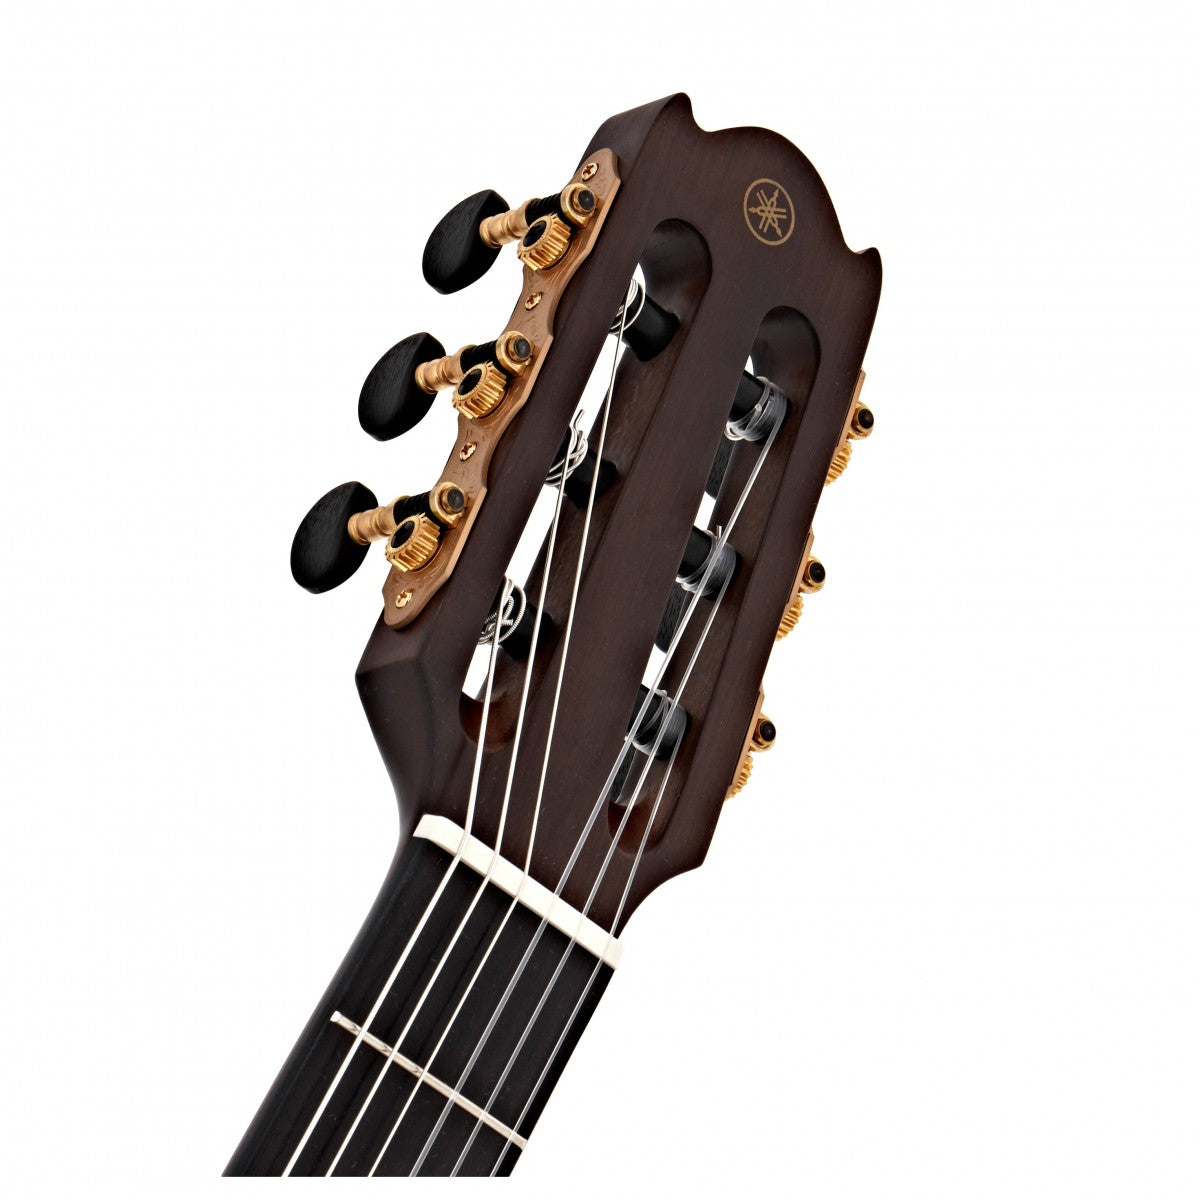 Đàn Guitar Yamaha NTX3 Acoustic - Electric Dây Nylon